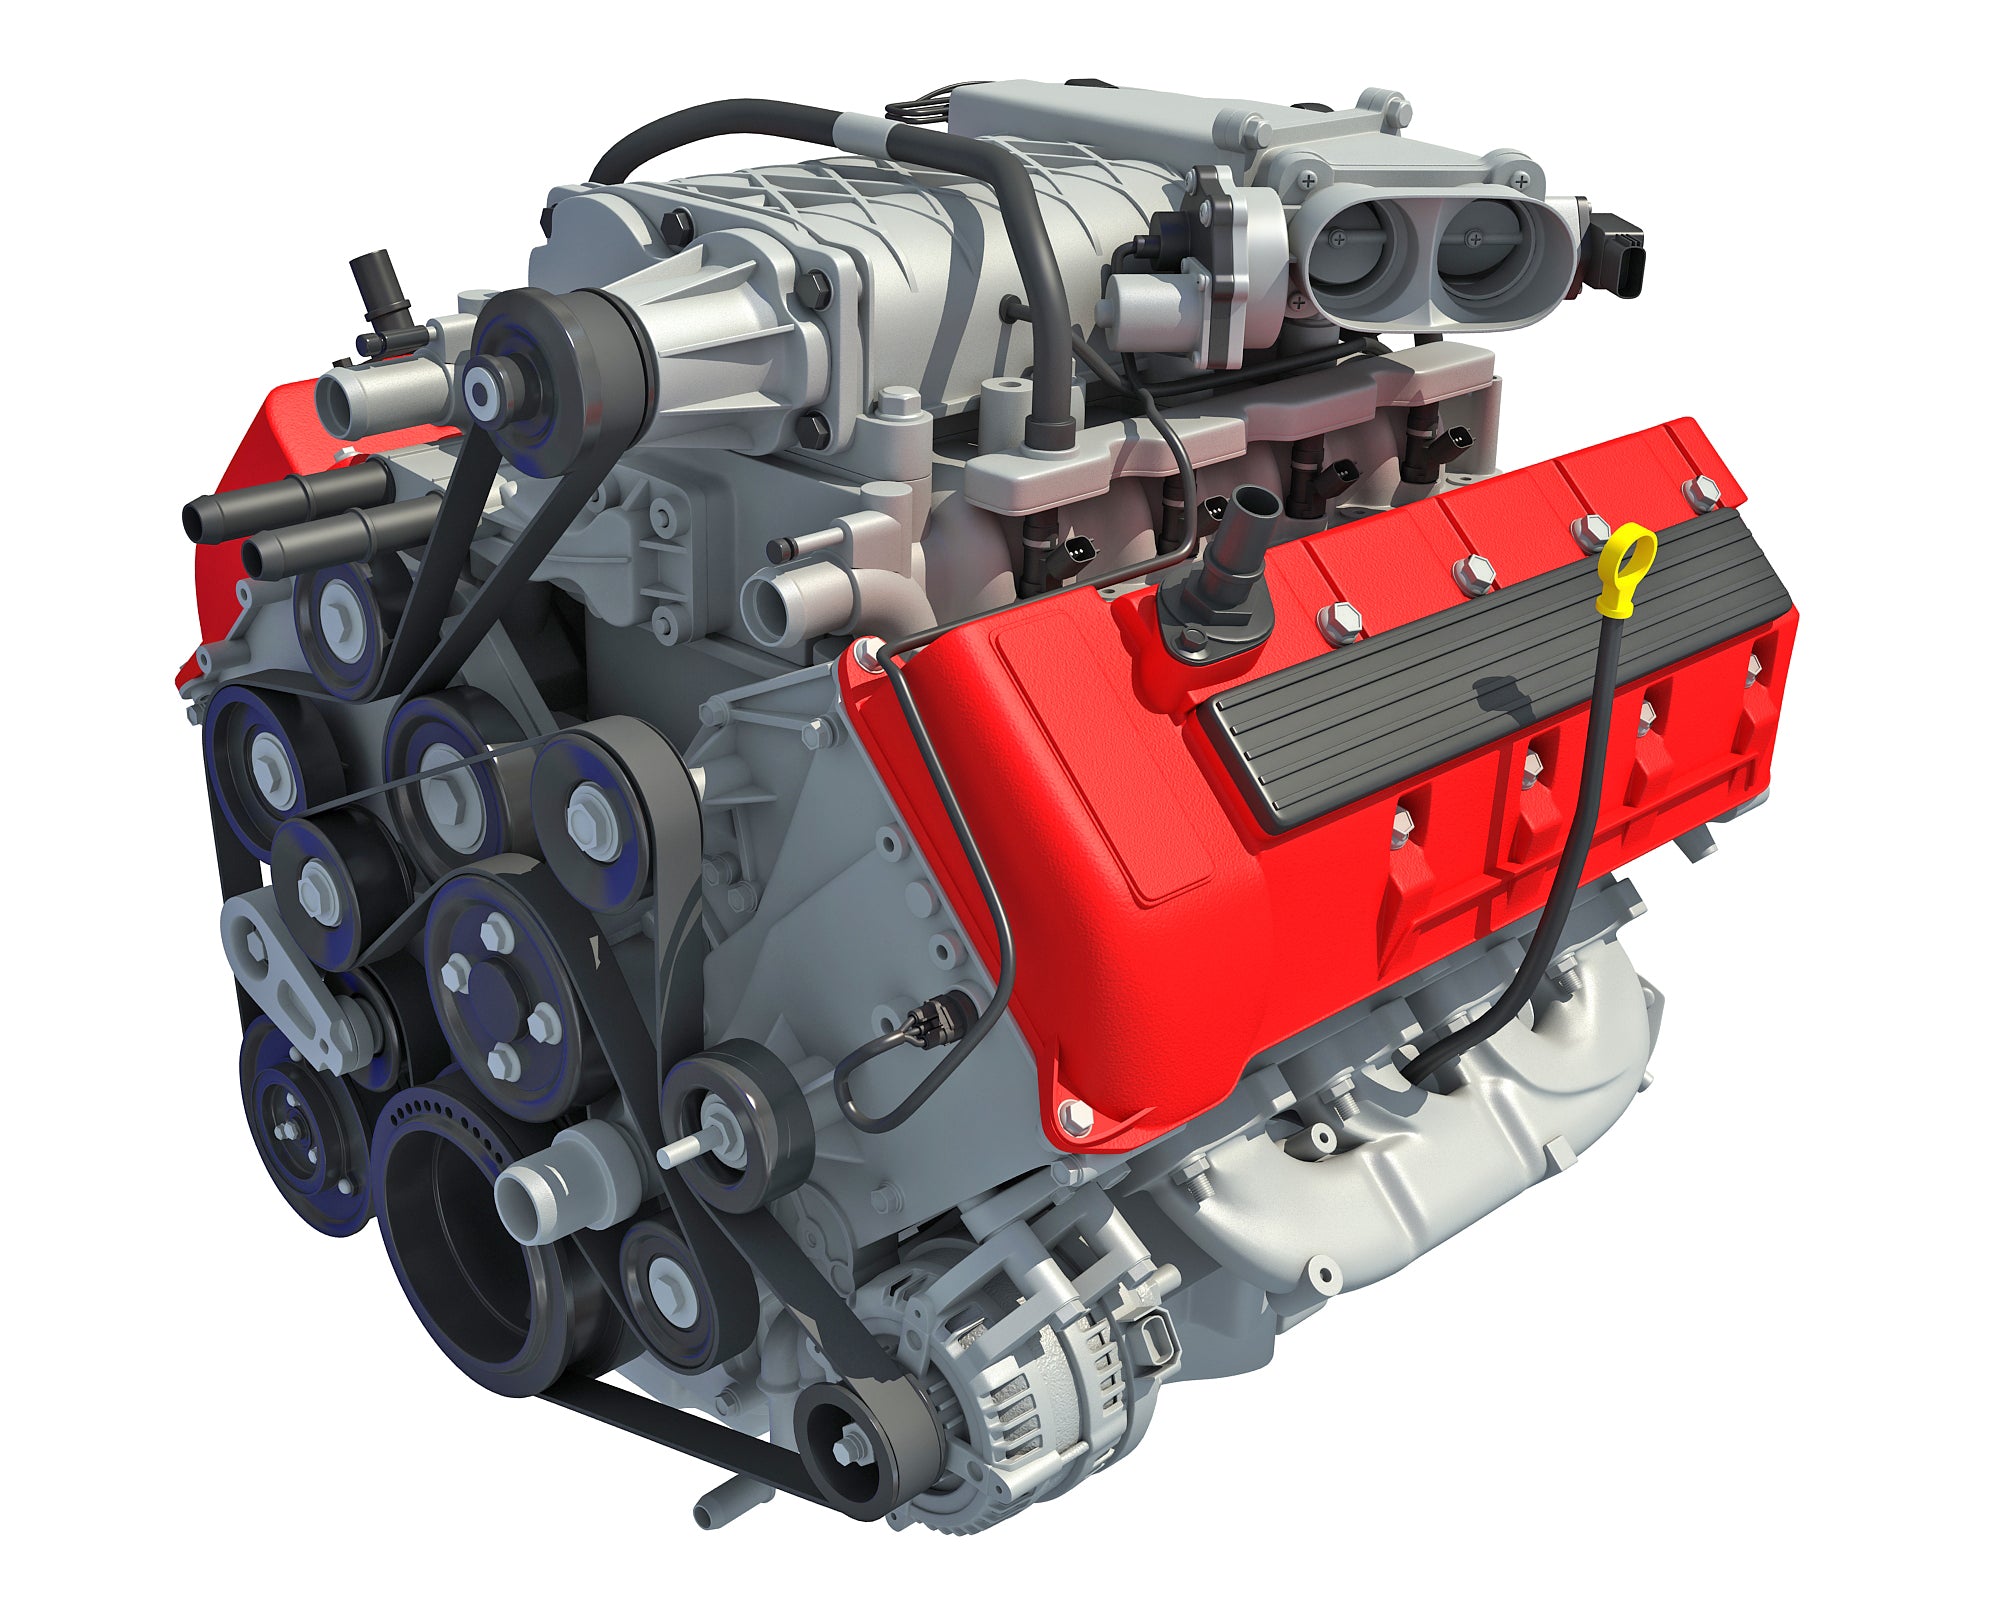 Animated V8 Engine